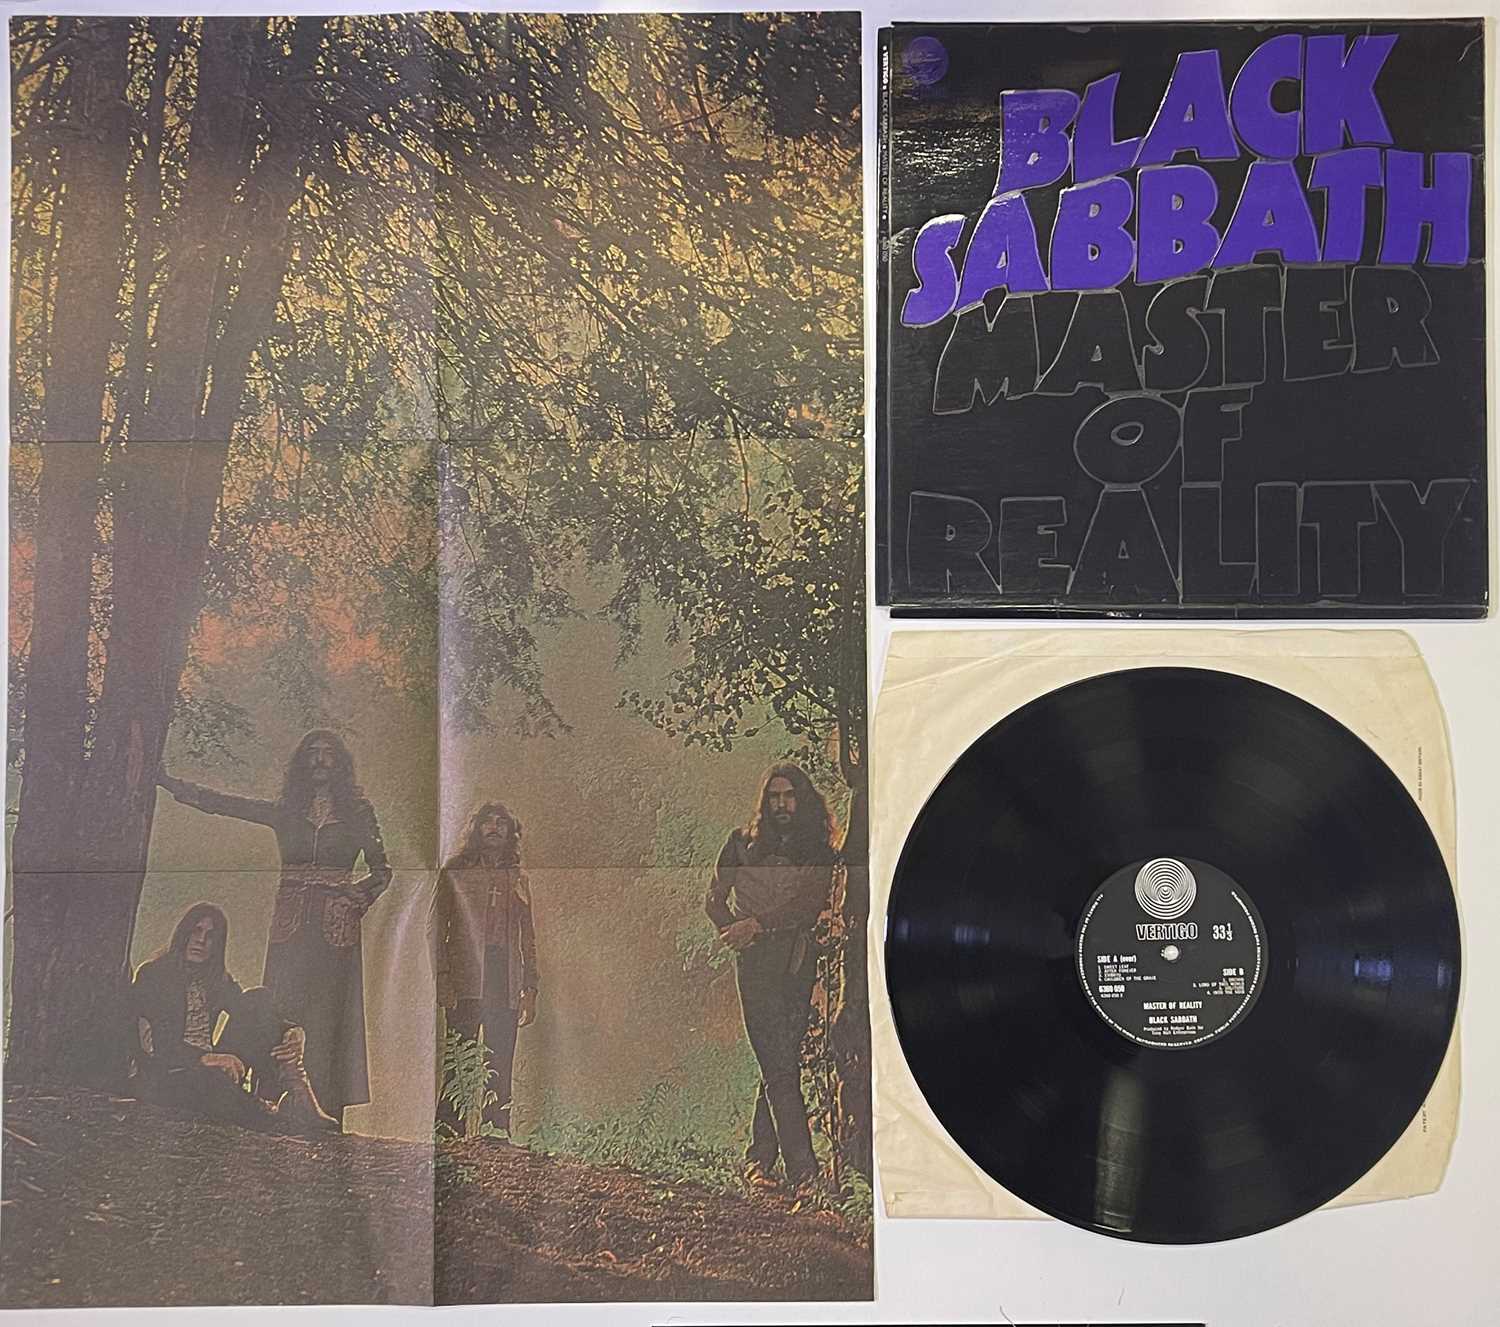 BLACK SABBATH - MASTER OF REALITY LP (COMPLETE ORIGINAL UK COPY (WITH POSTER) - VERTIGO 6360 050)